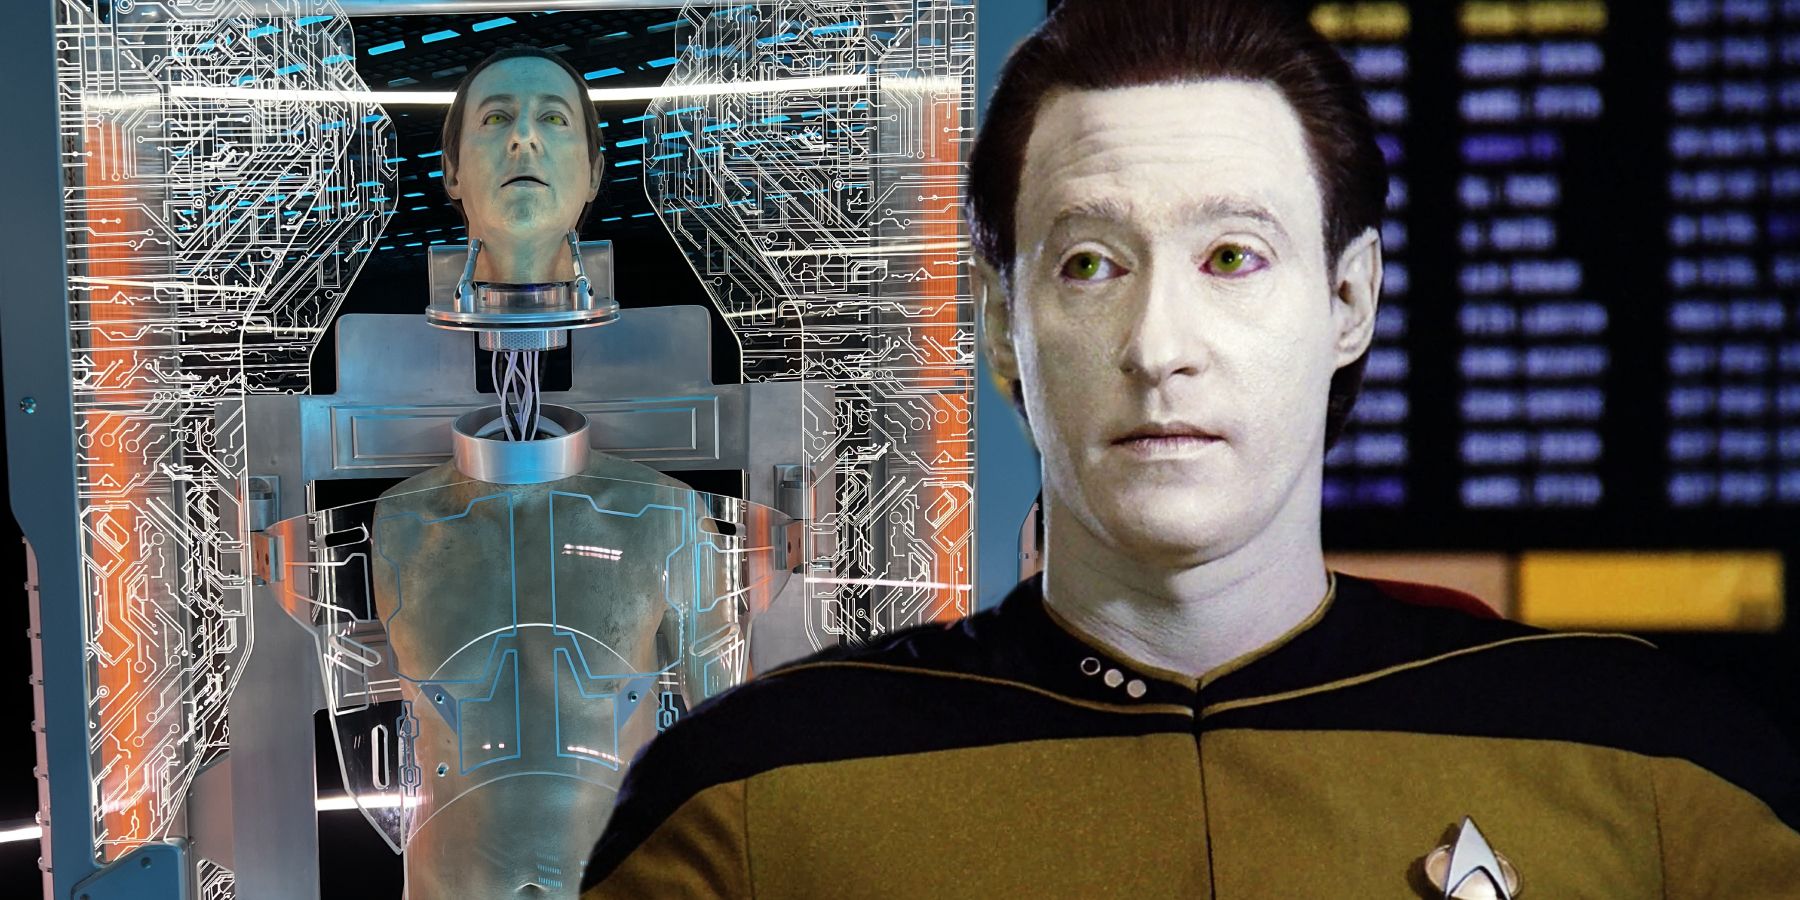 "Datos, ¿qué has hecho?": Star Trek acaba de confirmar la mayor mentira sobre la forma humana de los datos